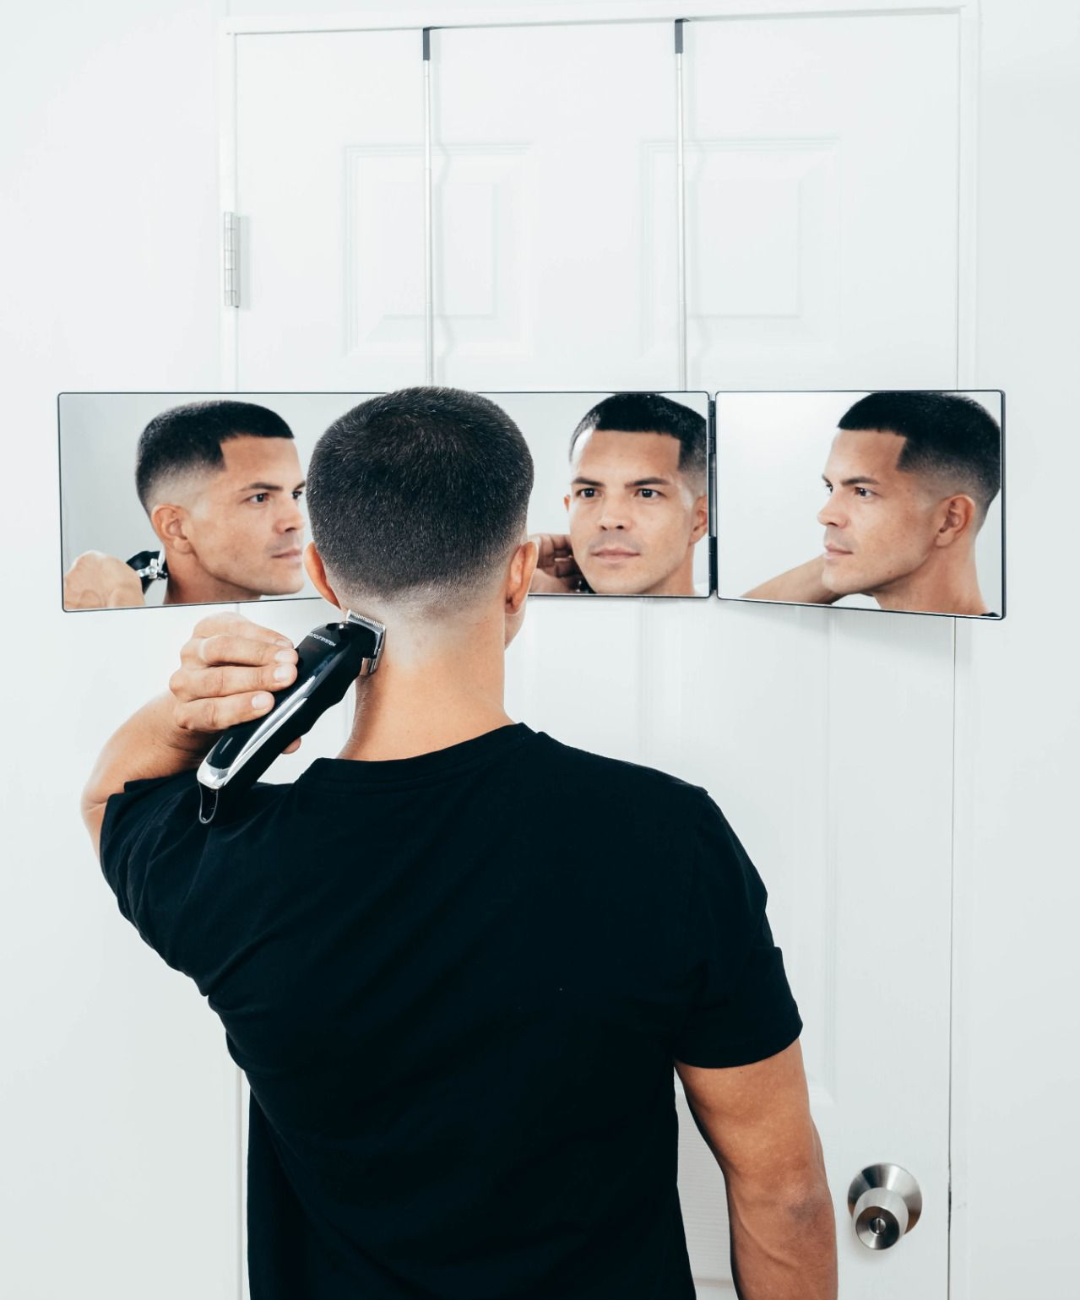 Cut Your Own Hair, Self-Cut System – Self Cut System